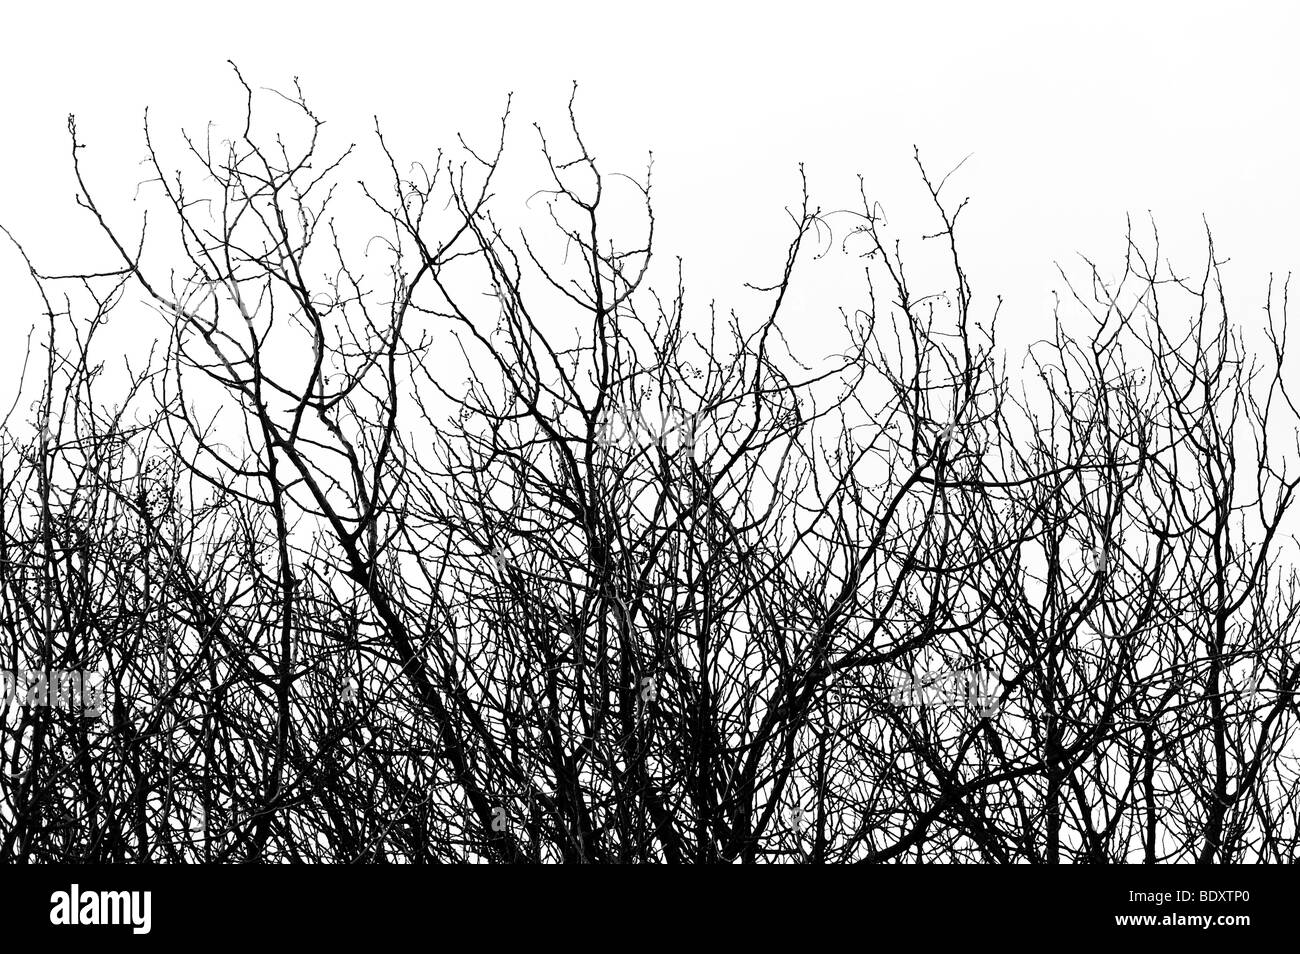 Les branches d'arbres isolés dans le milieu naturel. Noir et blanc. Banque D'Images